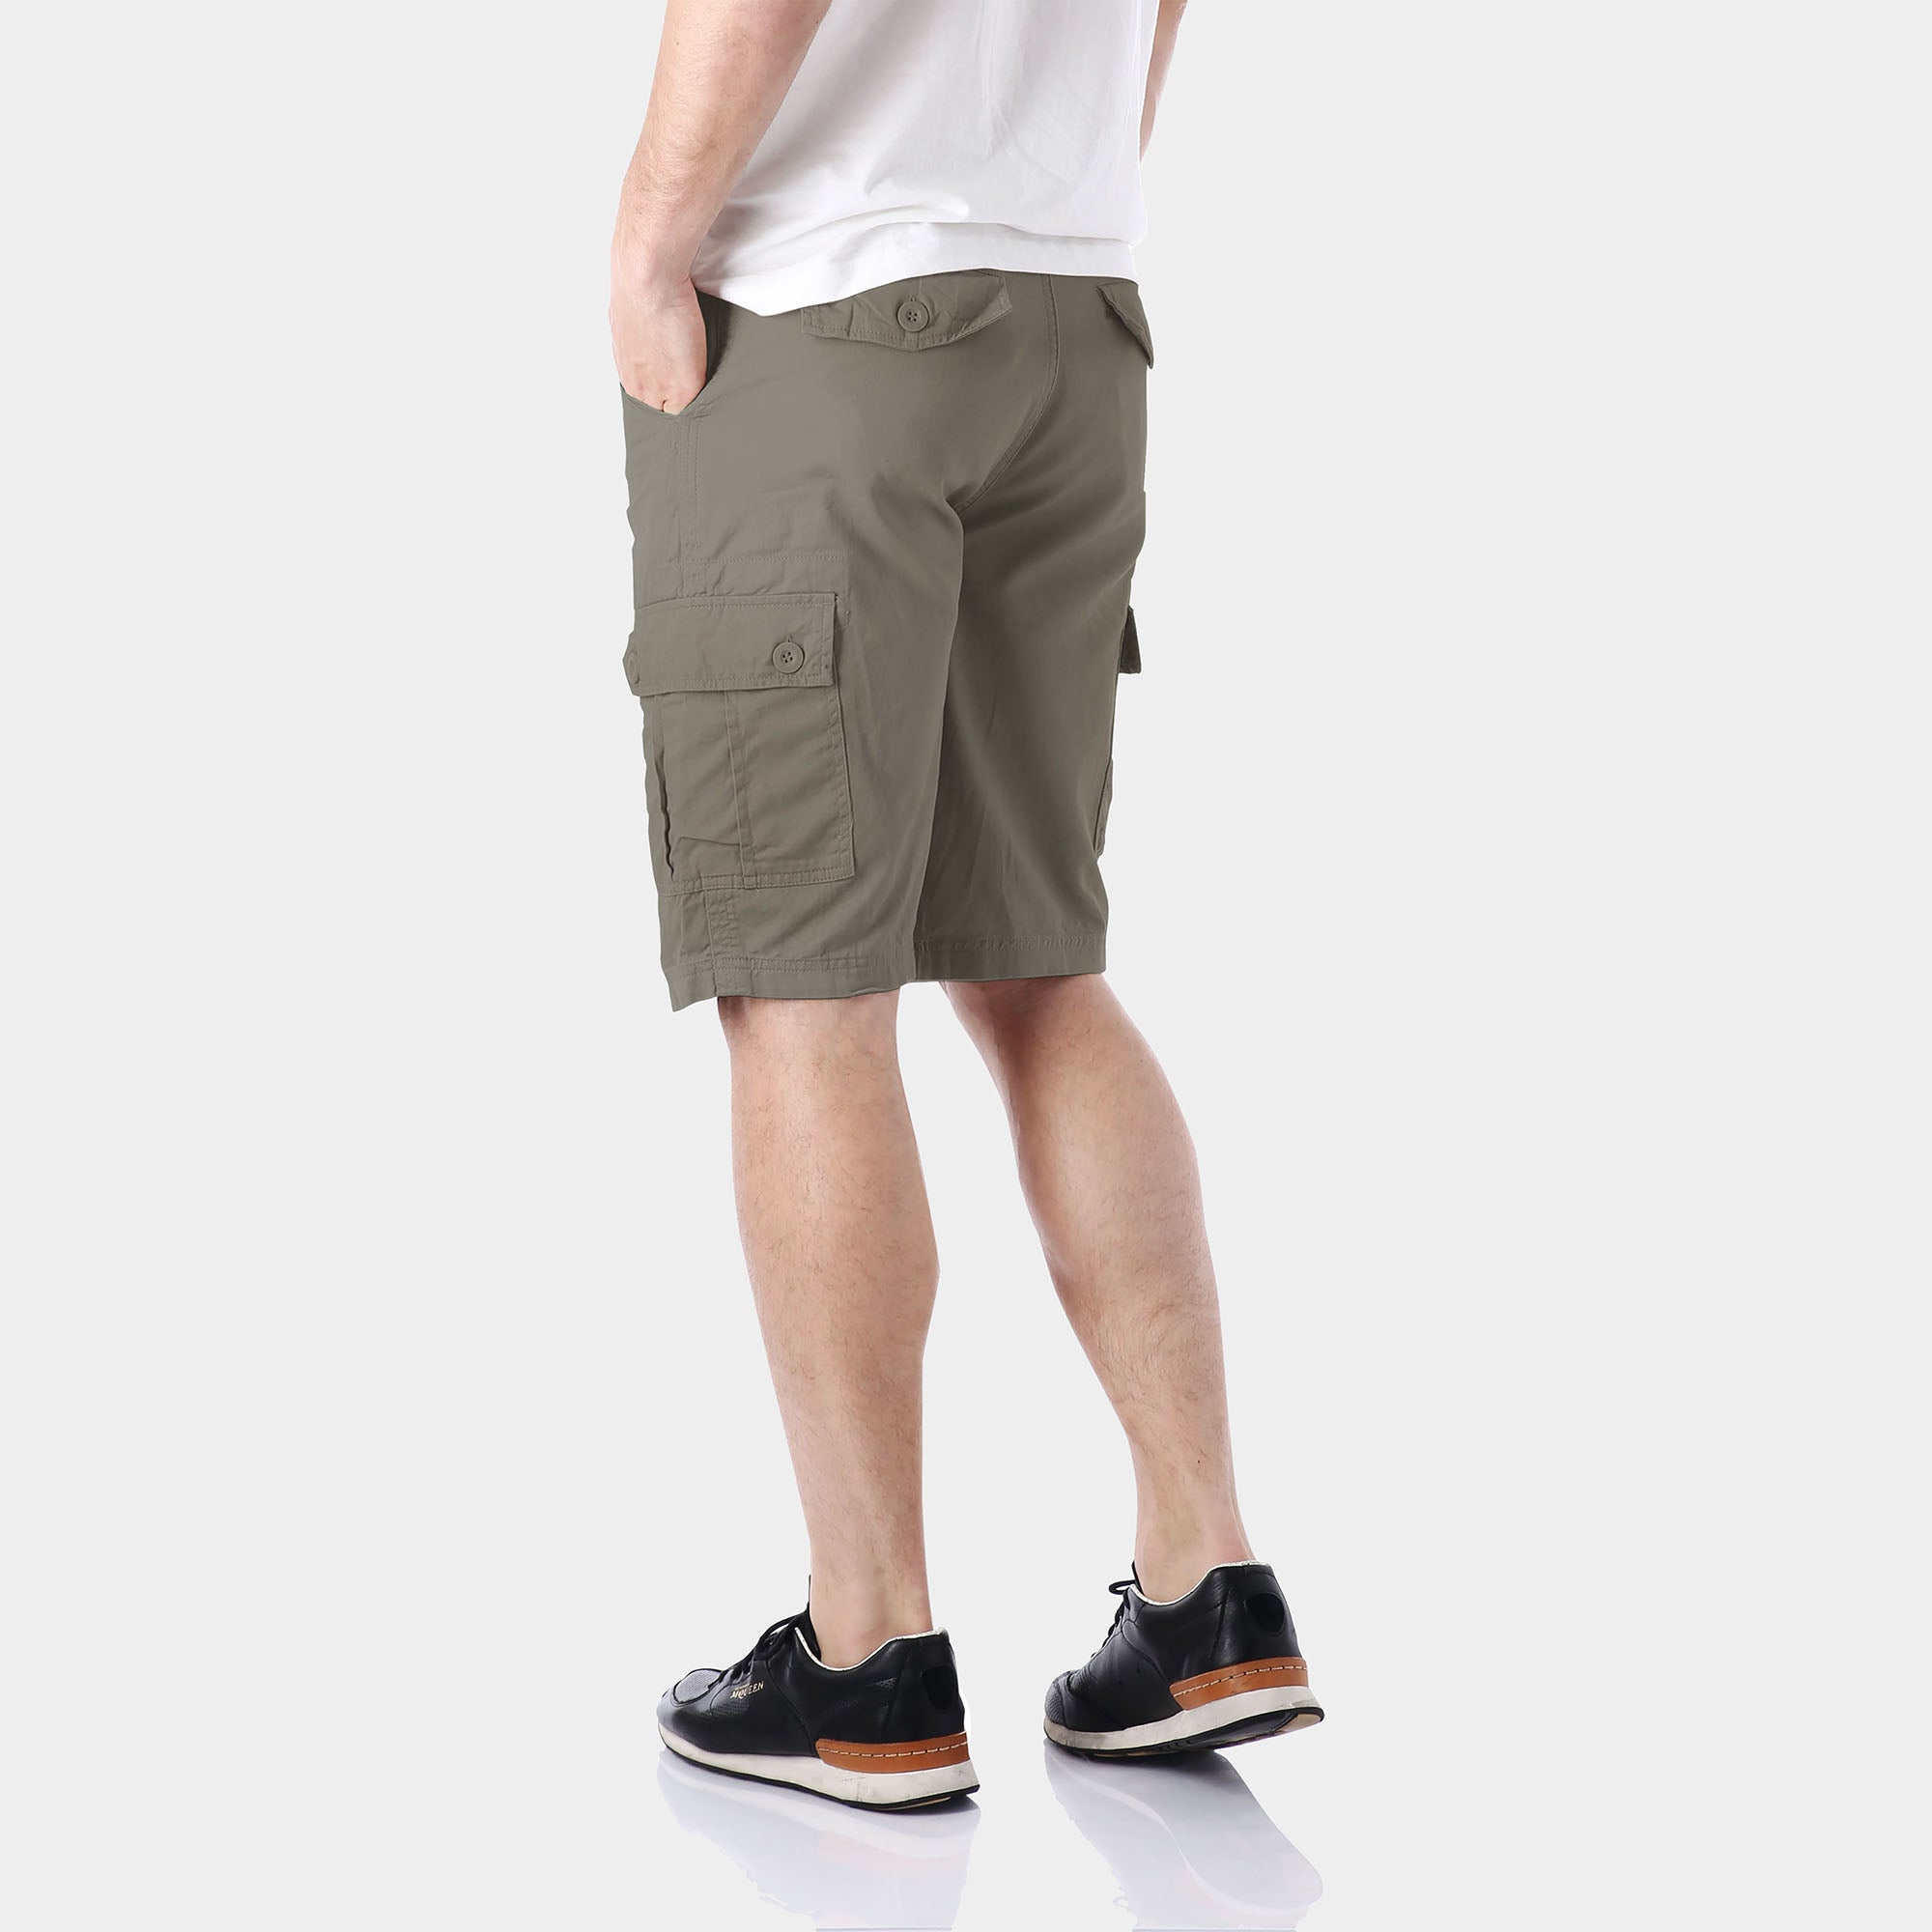 cargo shorts_mens cargo shorts_men's cargo shorts_wrangler cargo shorts_boys cargo shorts_unionbay cargo shorts_old navy cargo shorts_Charcoal